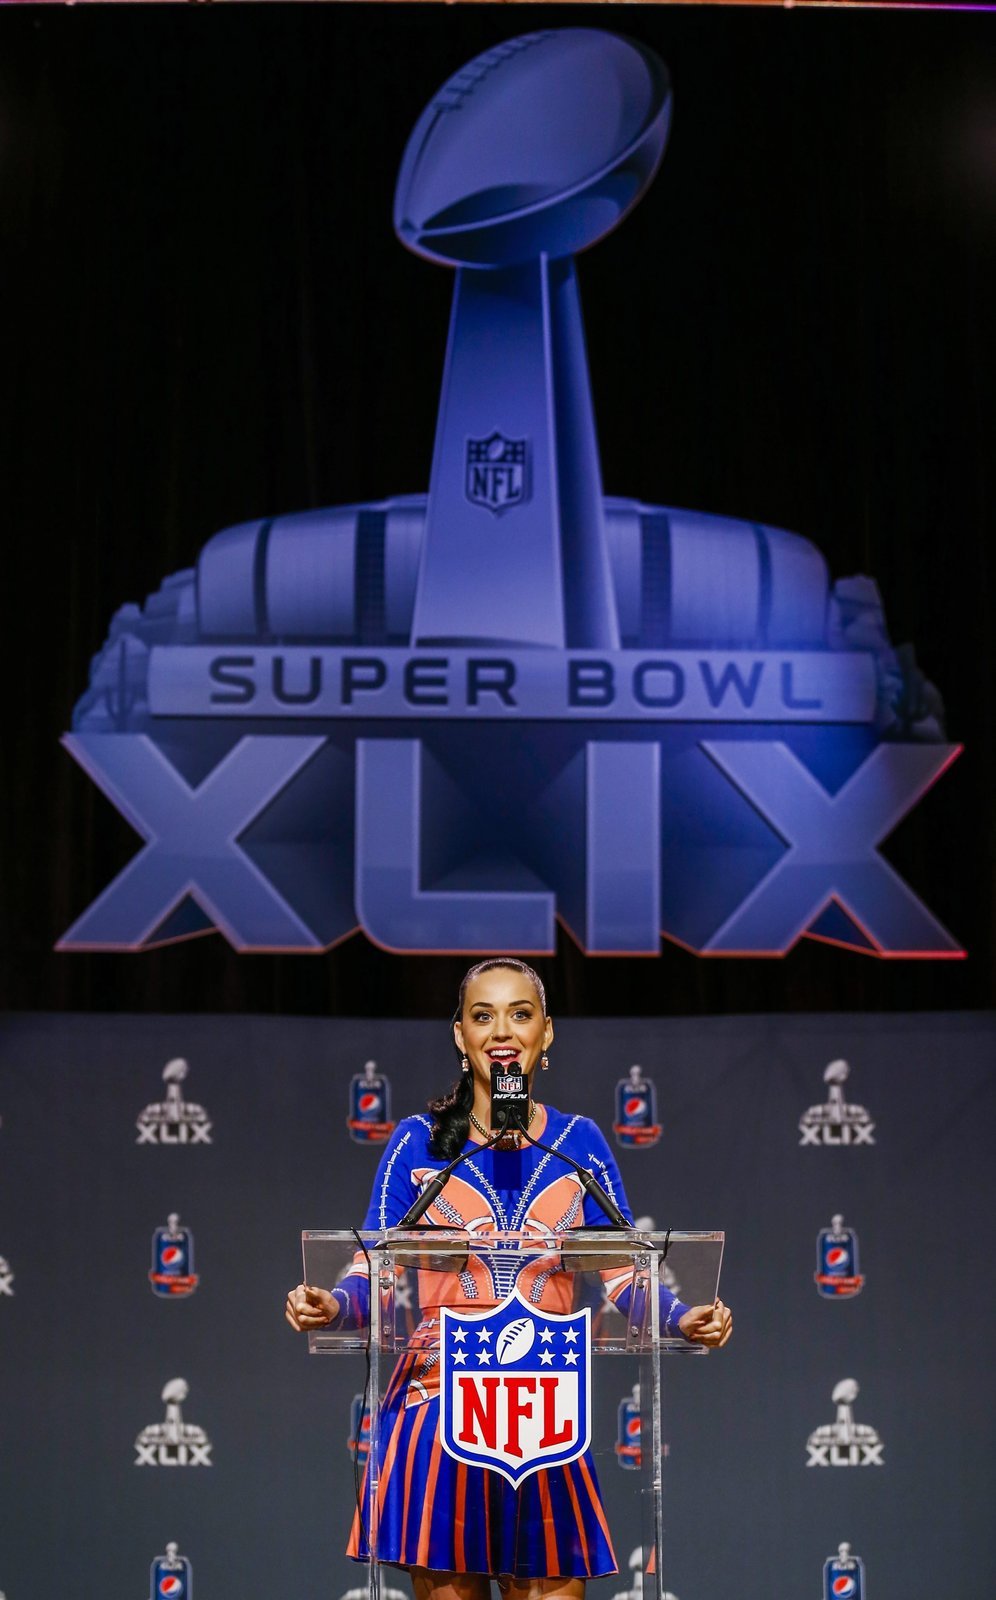 Zpěvačka Katy Perry na tiskové konferenci k Super Bowlu pobavila fanoušky i novináře